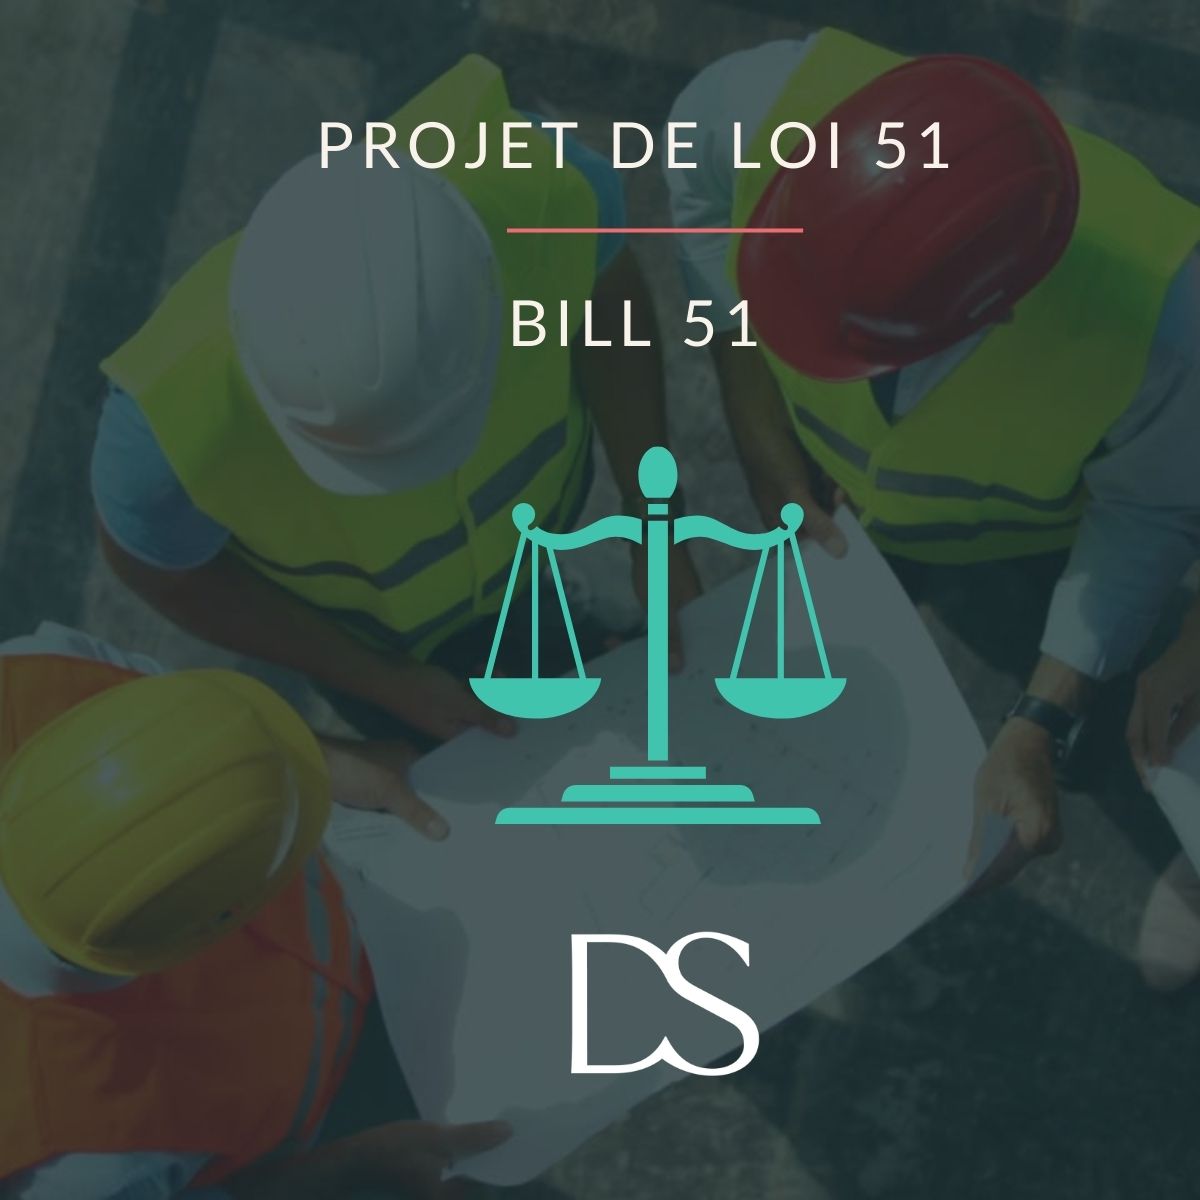 Projet de loi 51 : modernisation des pratiques dans l’industrie de la construction au Québec